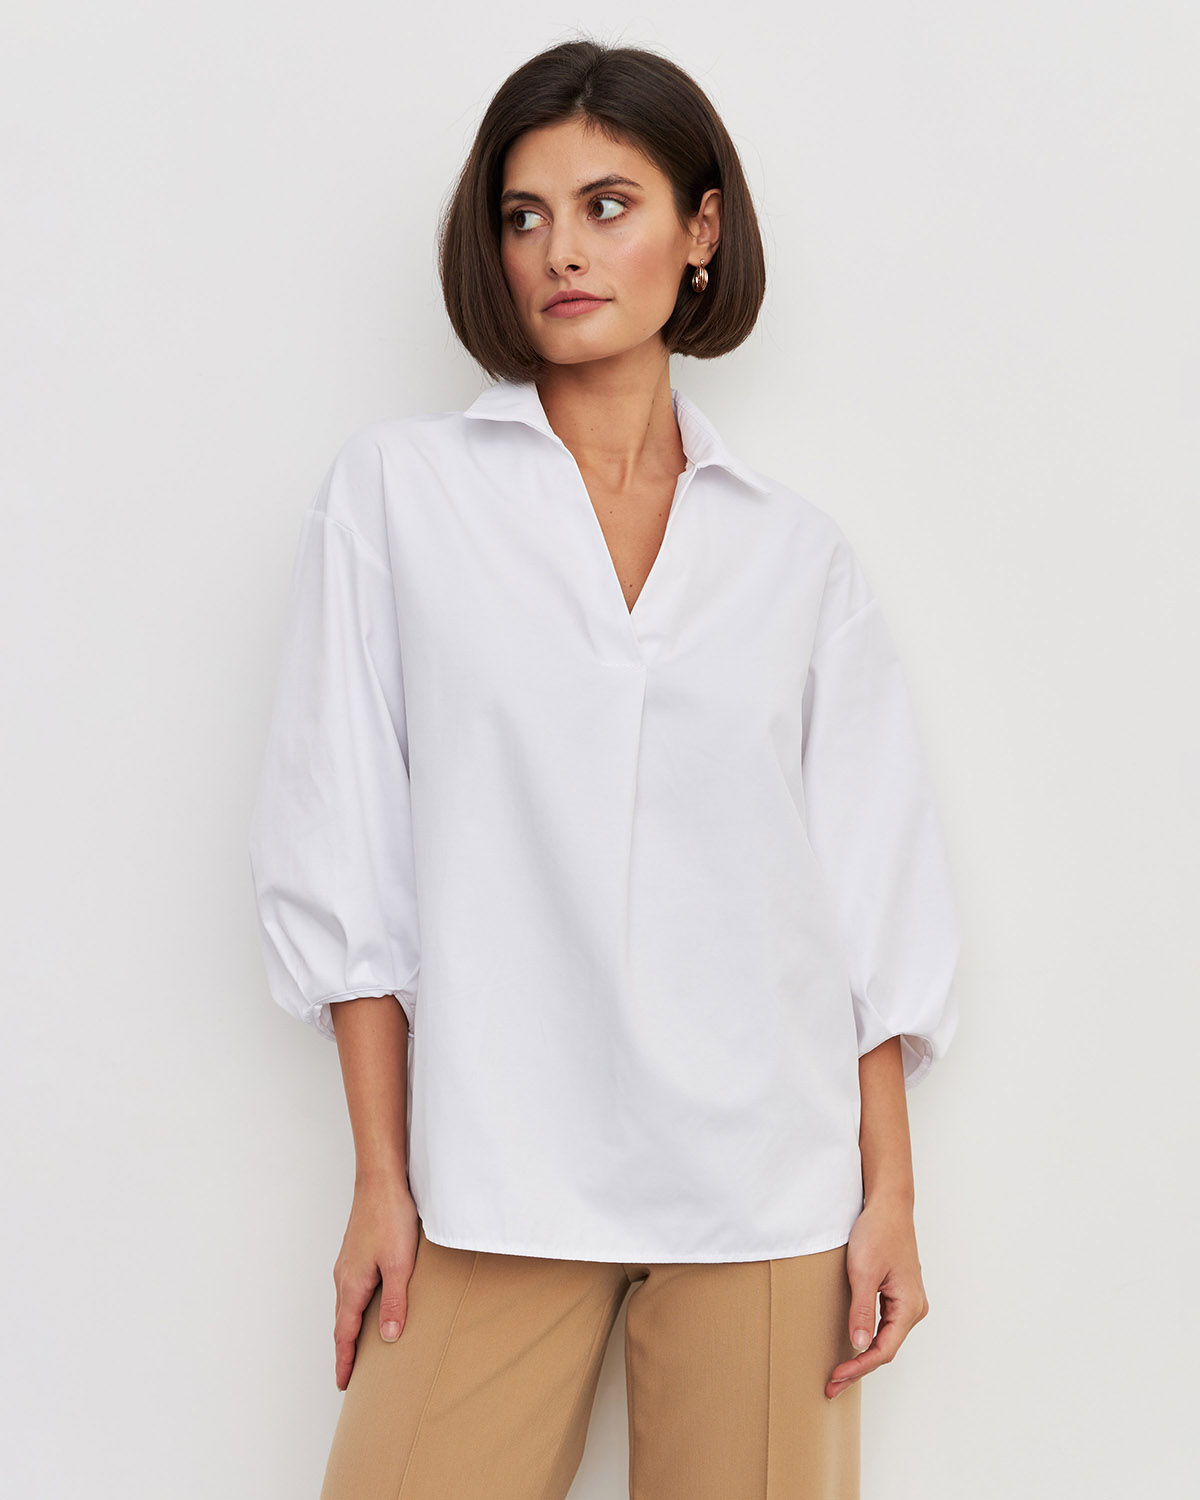 Рубашка женская LaVerita Р-002-1 белая 46 RU